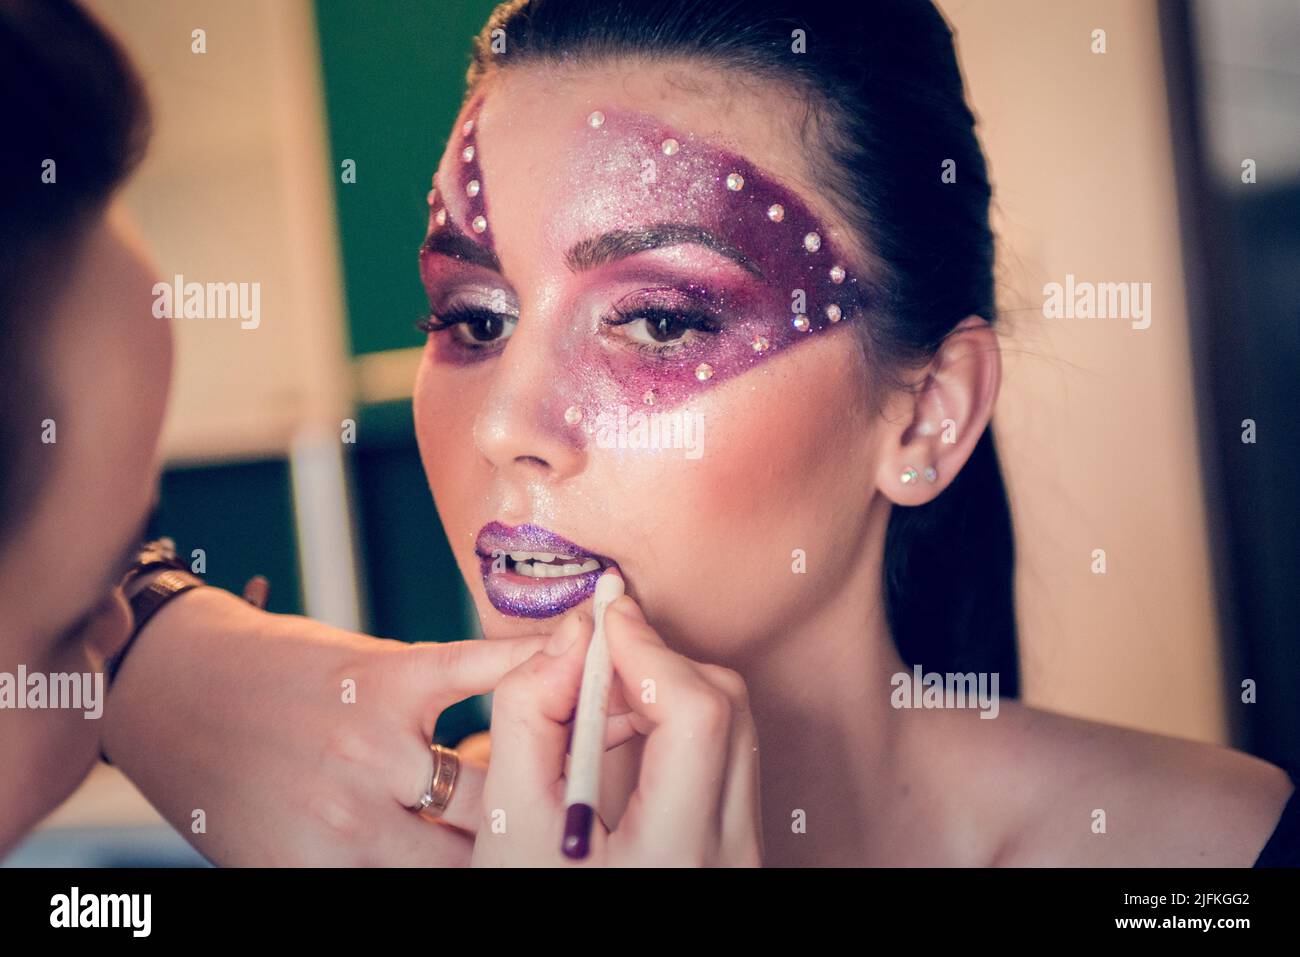 Après avoir peint le visage du modèle avec du violet et des cristaux, l'artiste de maquillage façonne ses lèvres avec un stylo de contour violet Banque D'Images